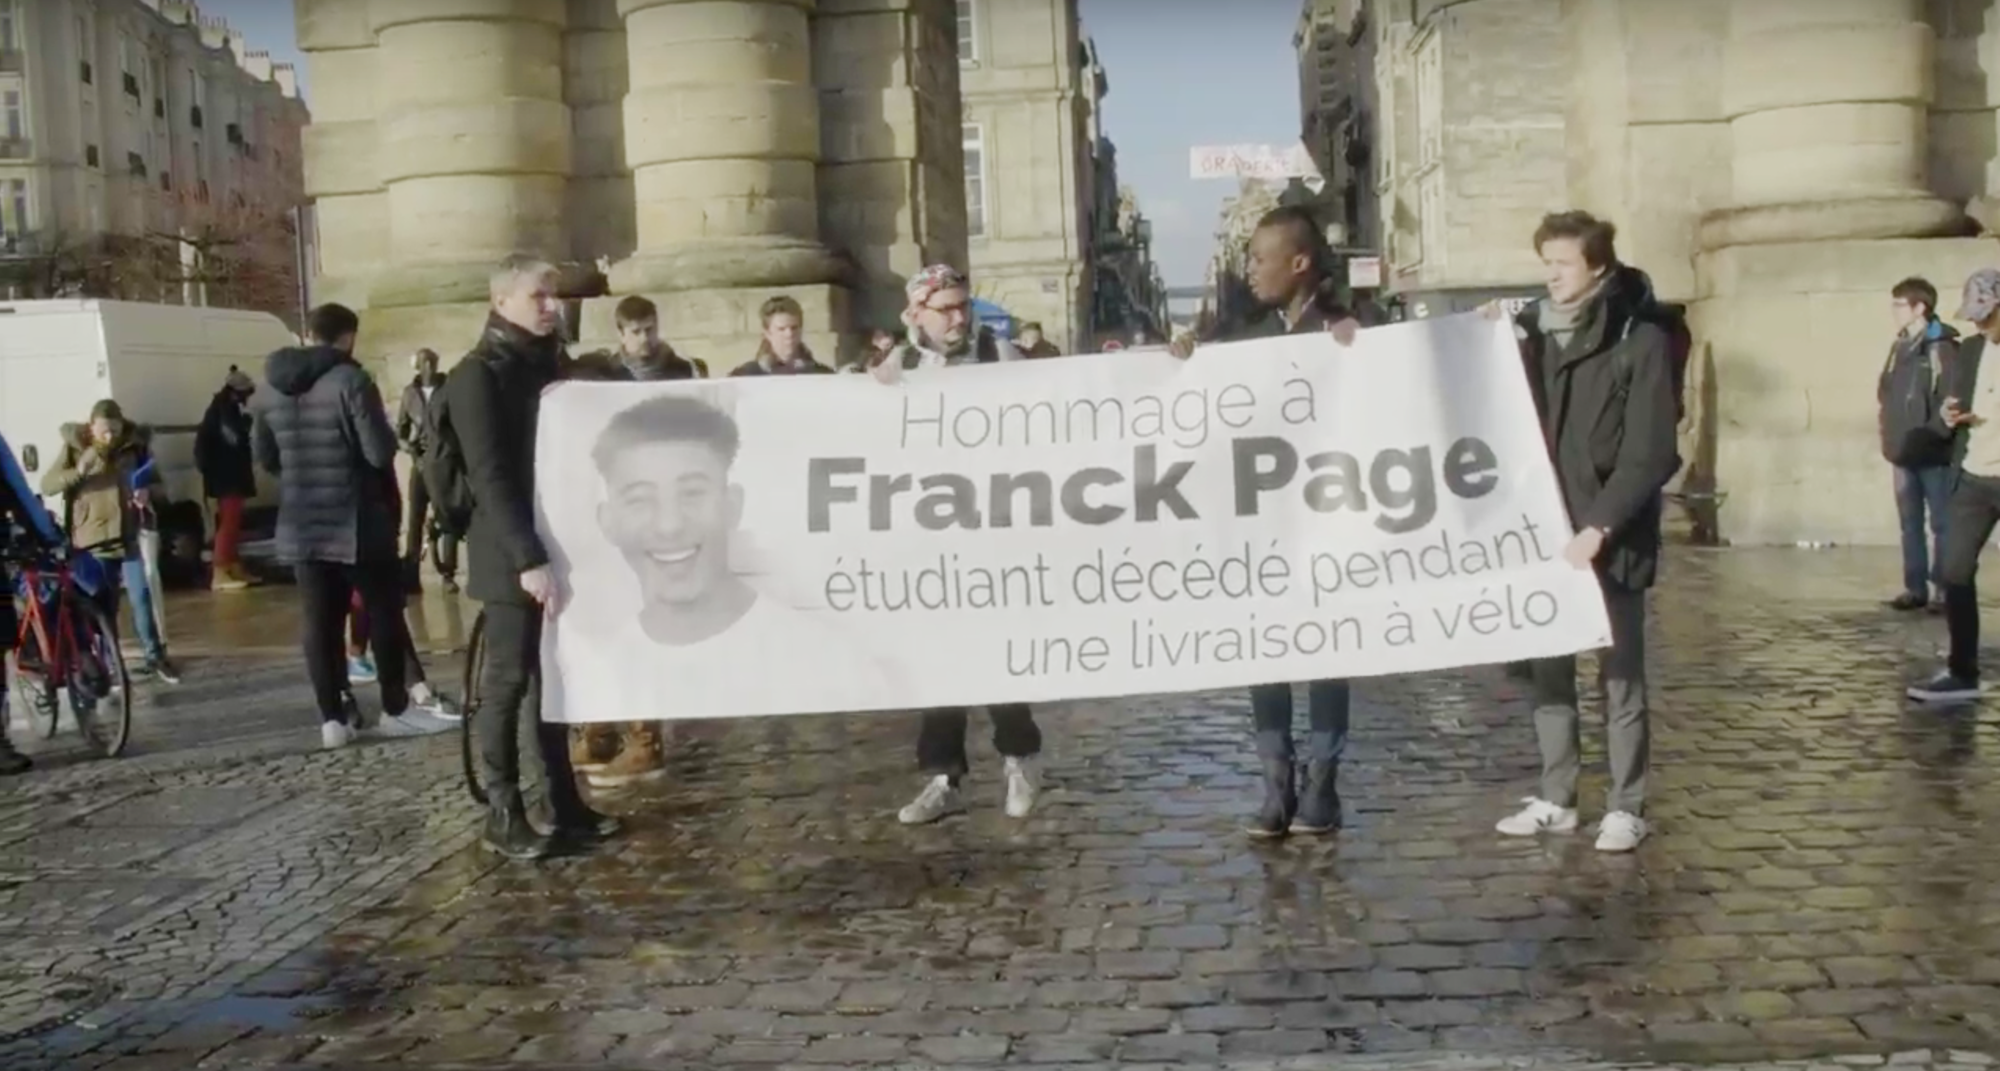 Hommage à Franck Page : « Ce n’est pas normal de mourir dans le cadre d’un job étudiant »